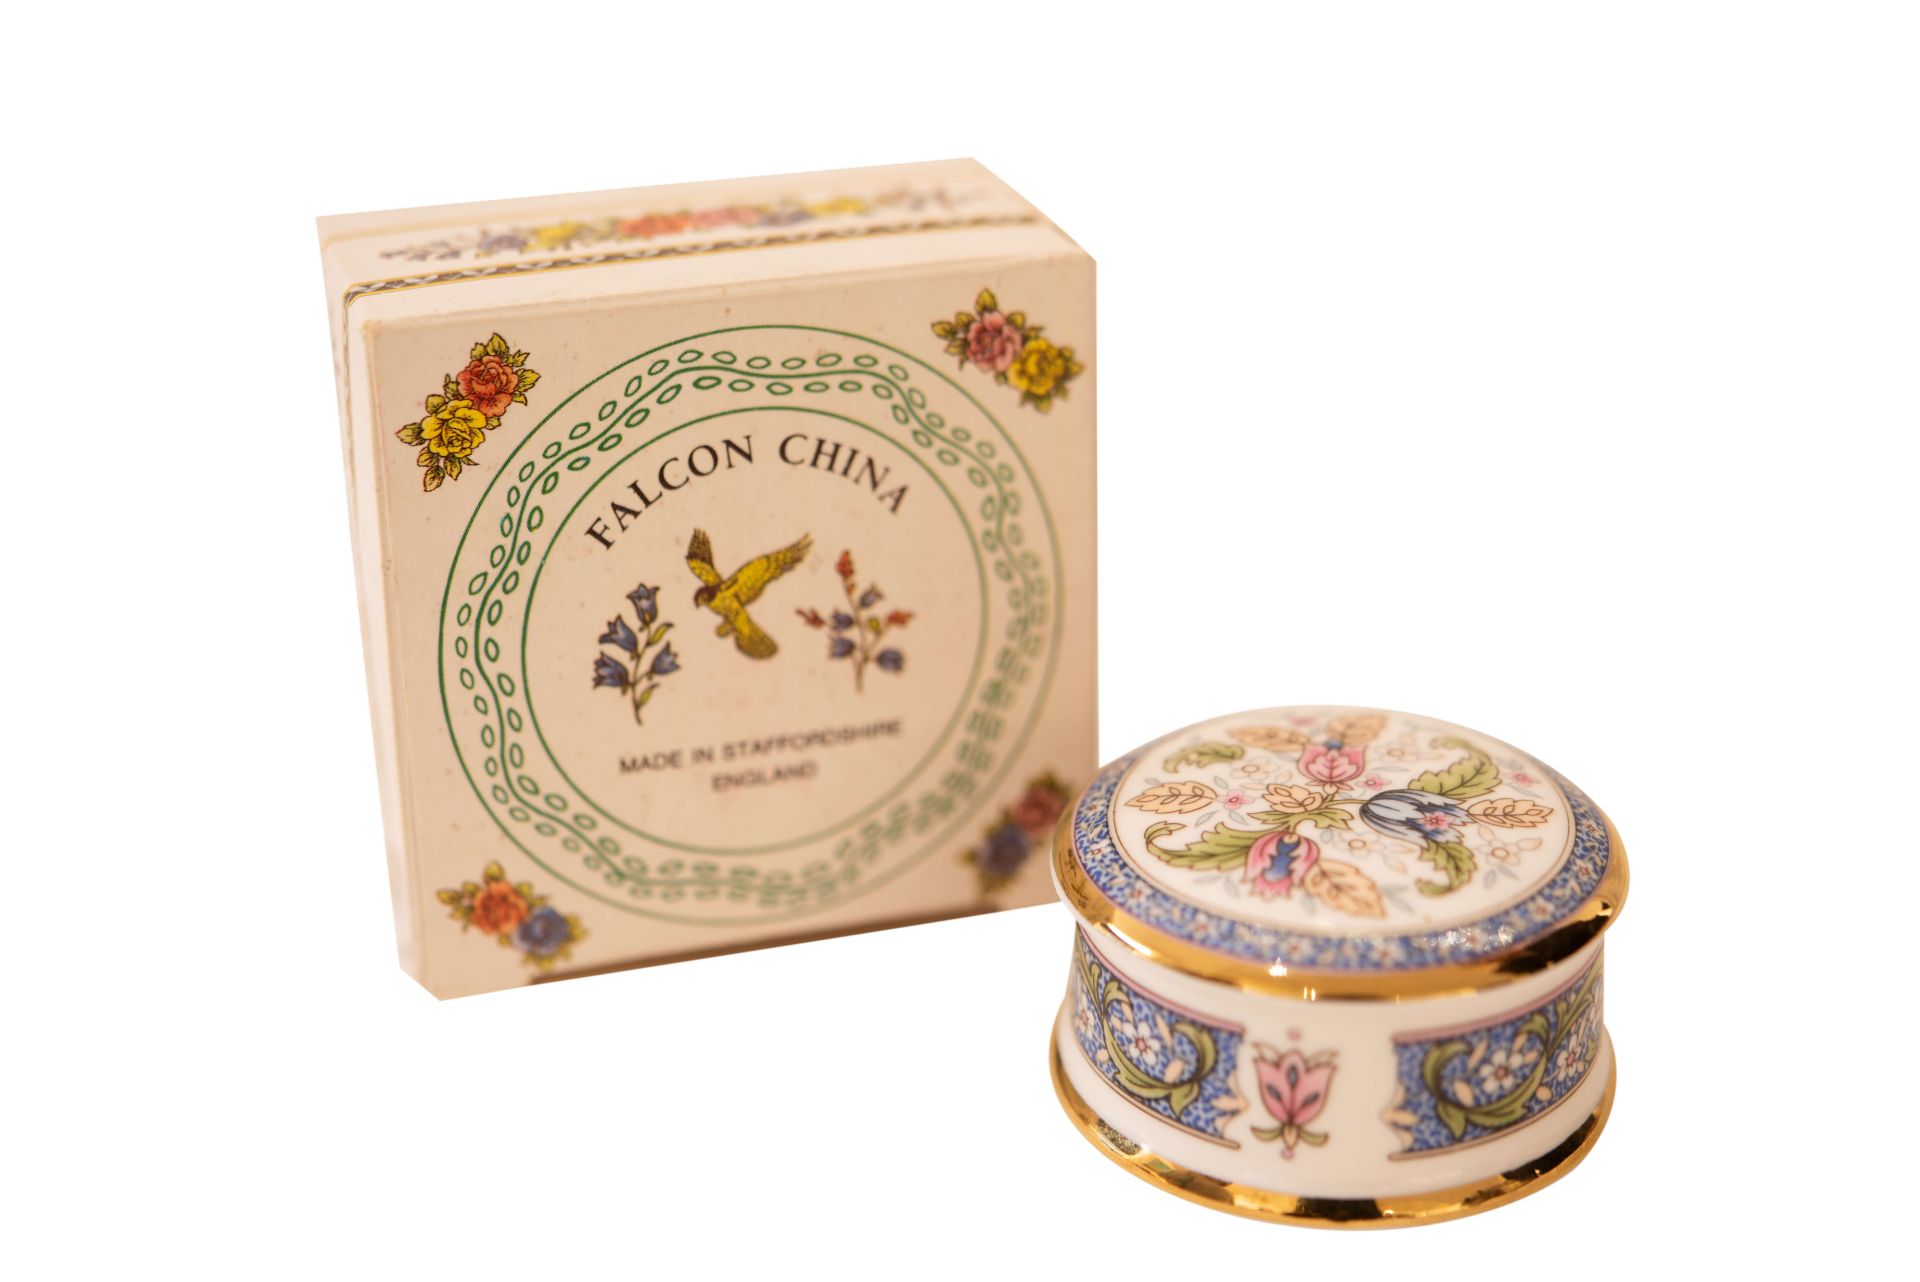 Florial Victoriana Falcon Schmuckkästchen |Florial Victoriana Falcon Jewelry Box